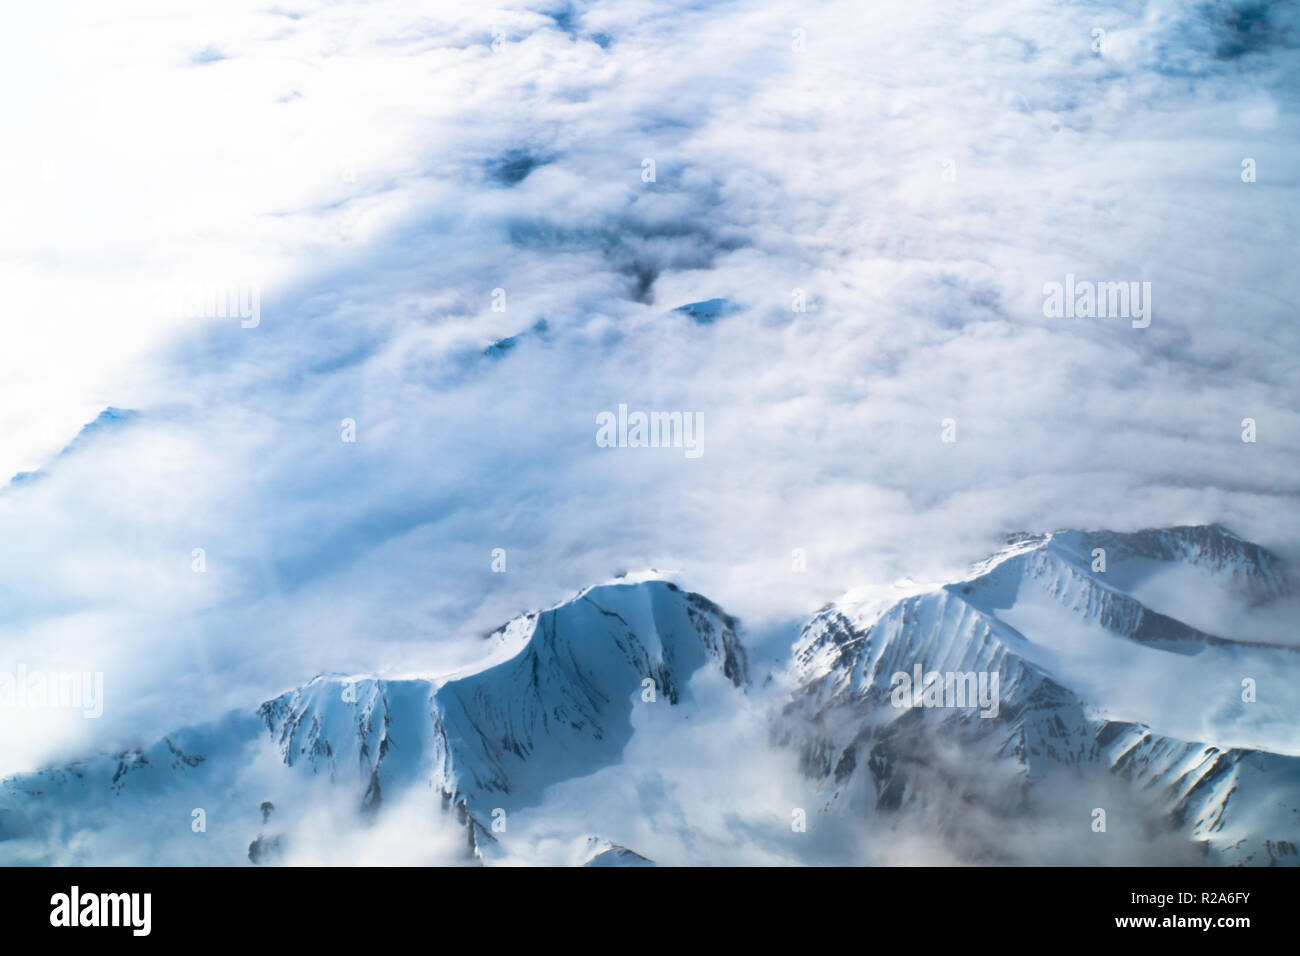 Photographie aérienne de la montagne et glacier de la glace de mer arctique à Svalbard, Norvège en juin Banque D'Images